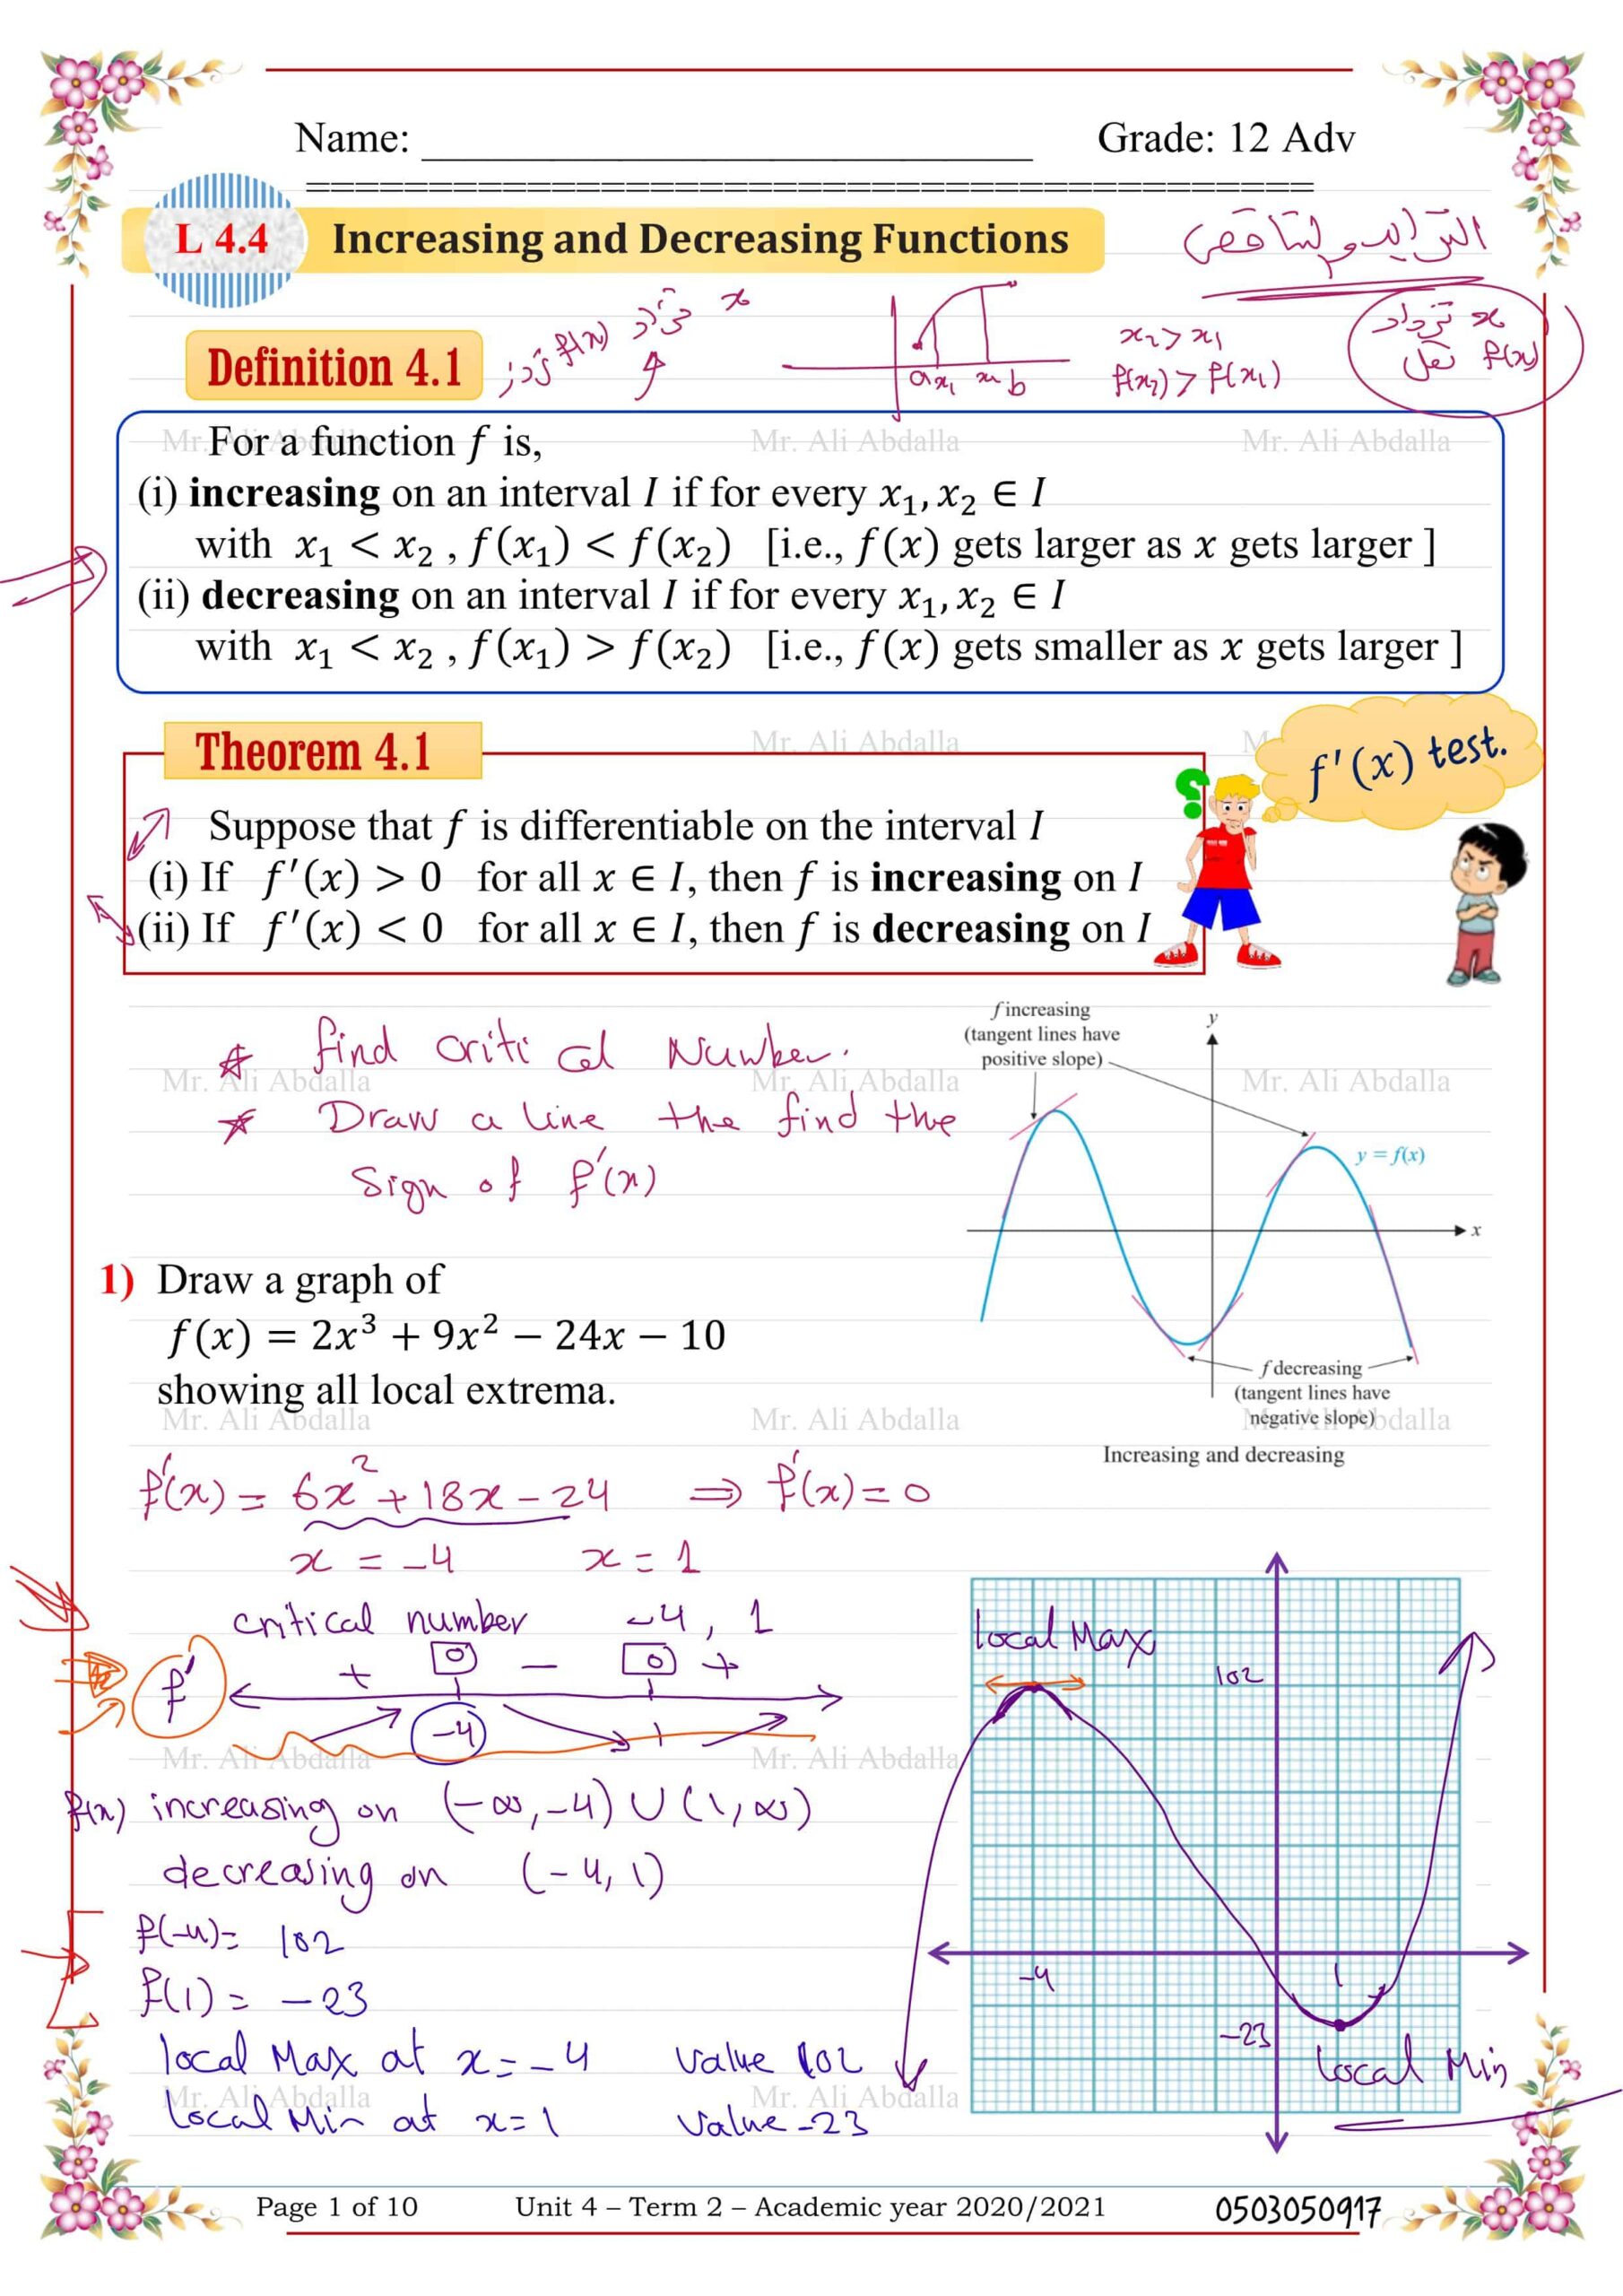 حل درس Increasing and Decreasing Functions الرياضيات المتكاملة الصف الثاني عشر